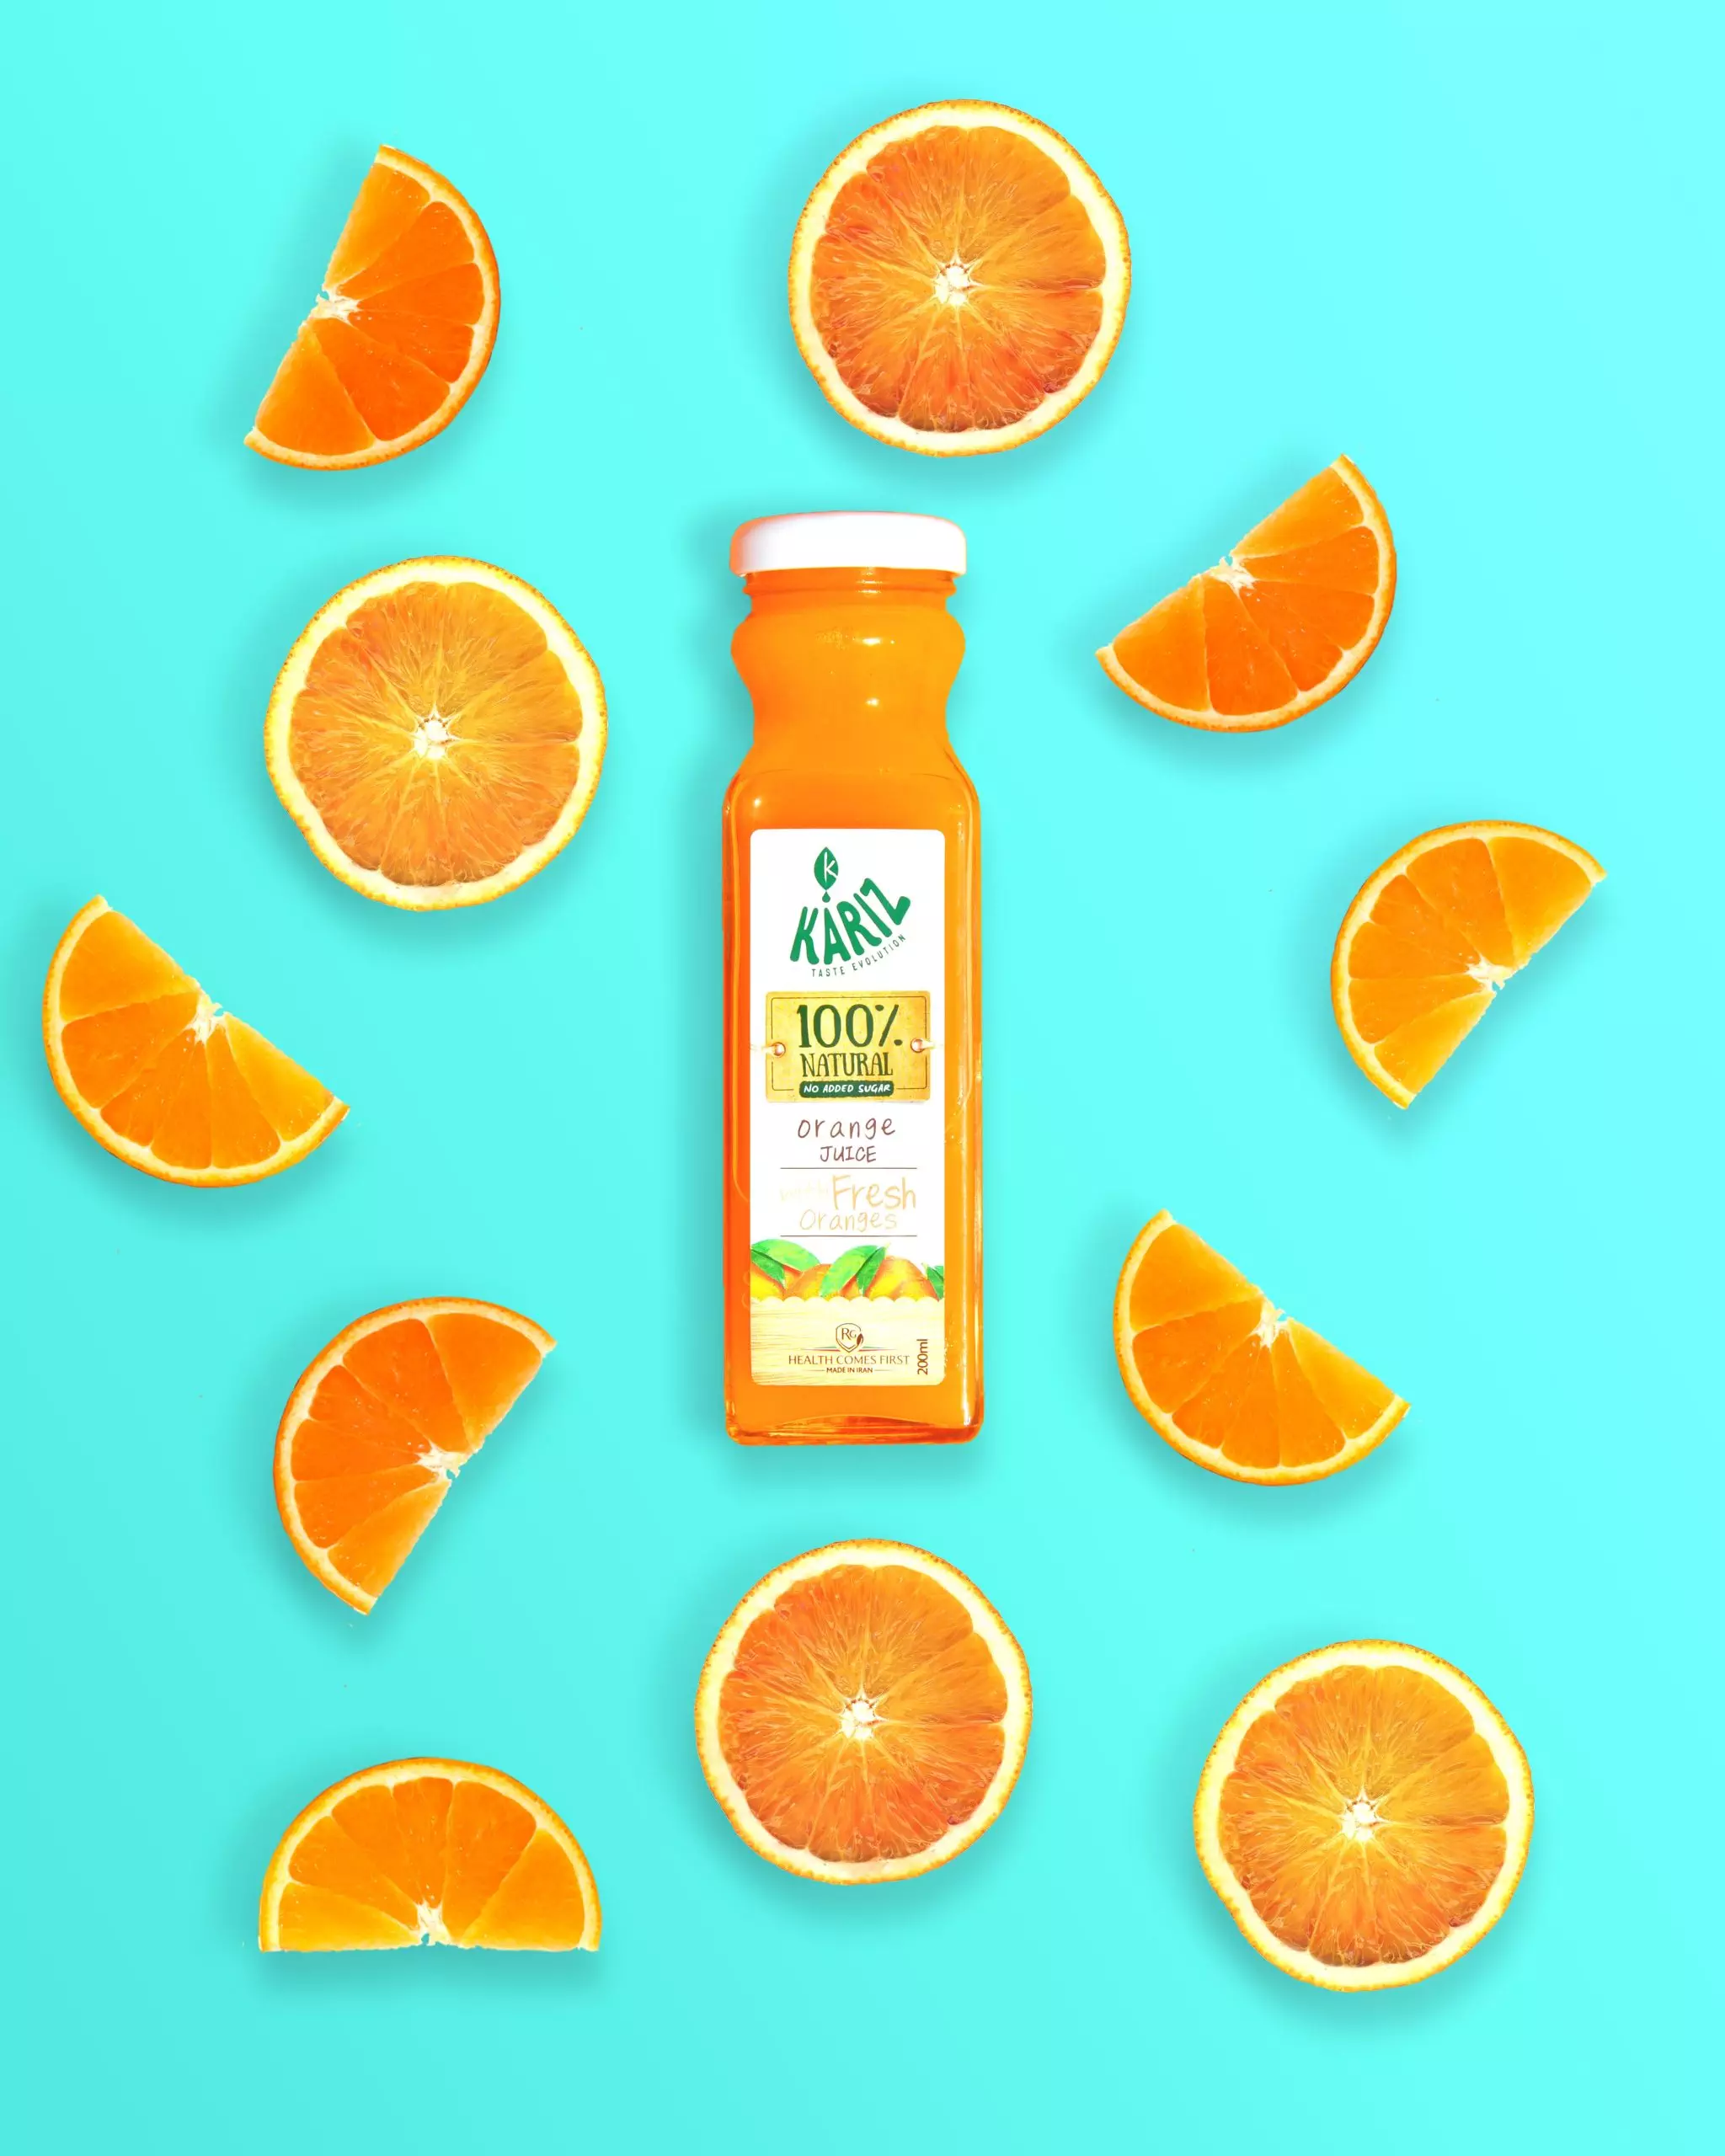 orange-juice-product-photography-flatlay